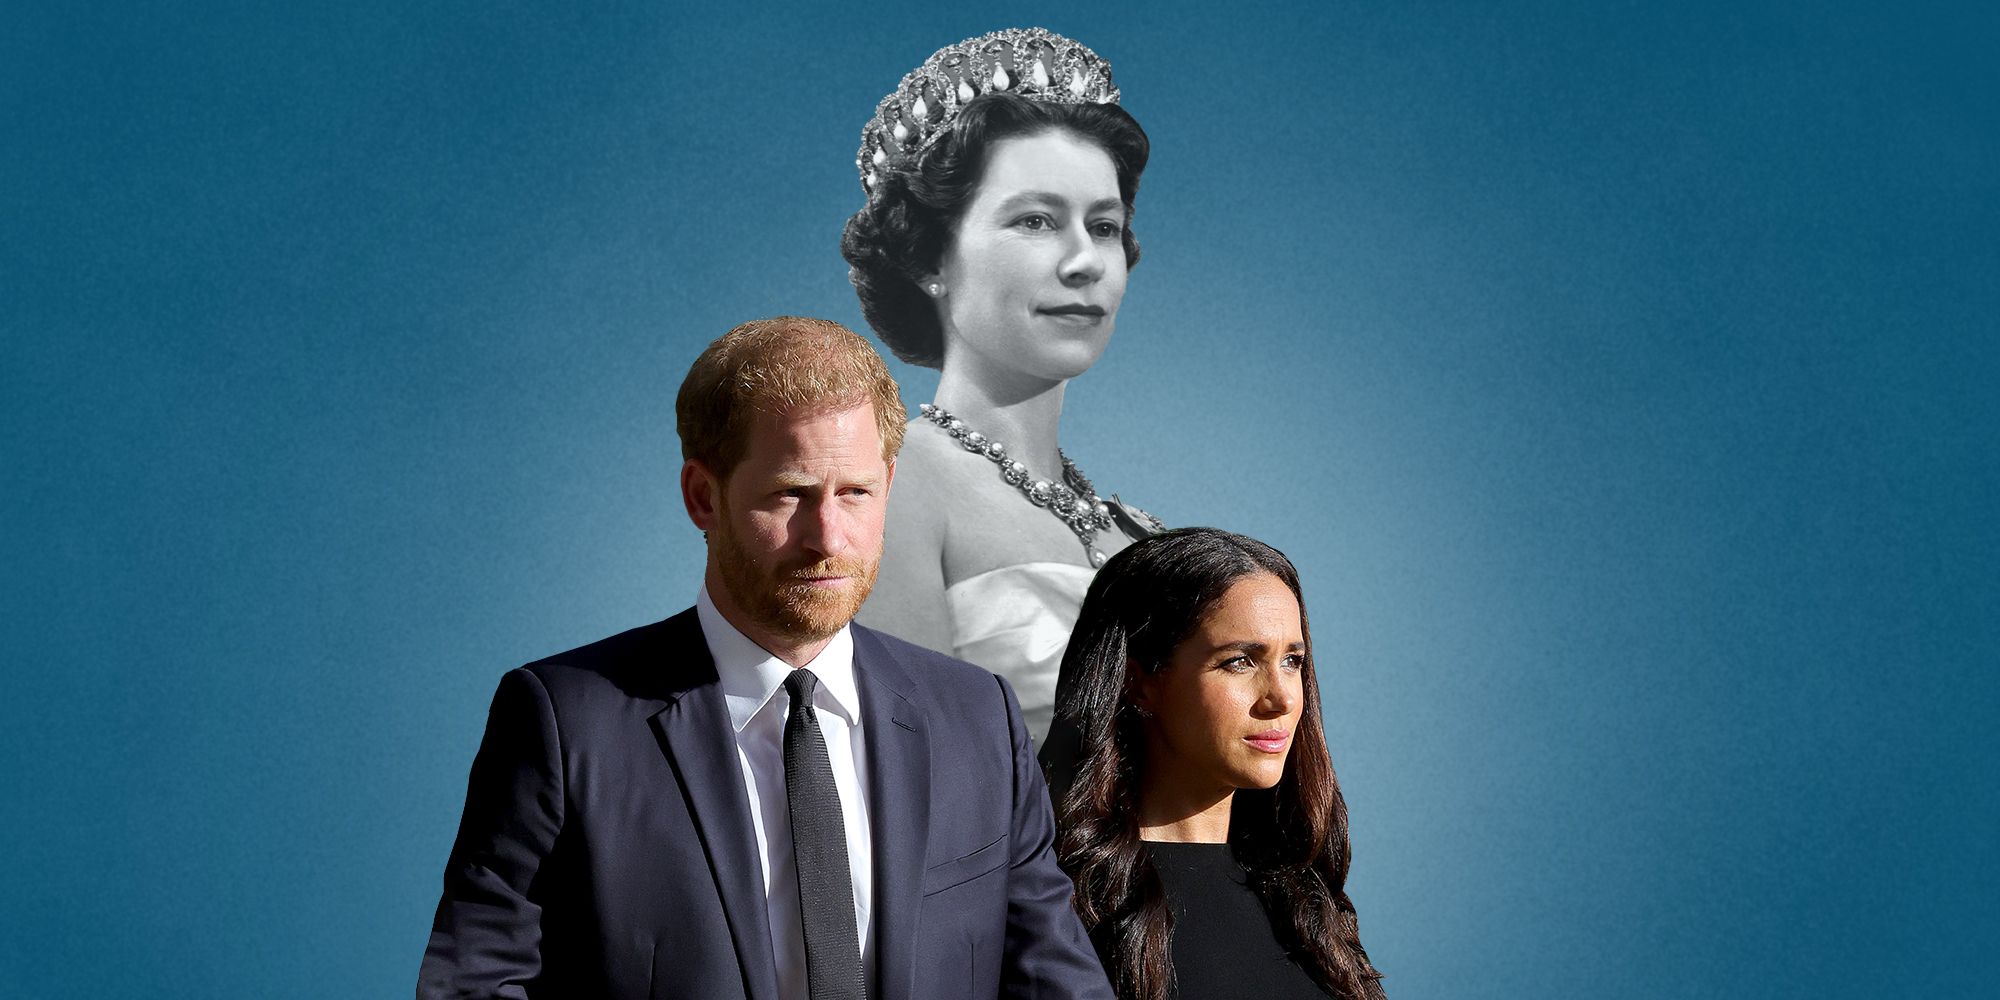 女王崩御から1年、ヘンリー王子夫妻と英国王室の溝はかつてない 